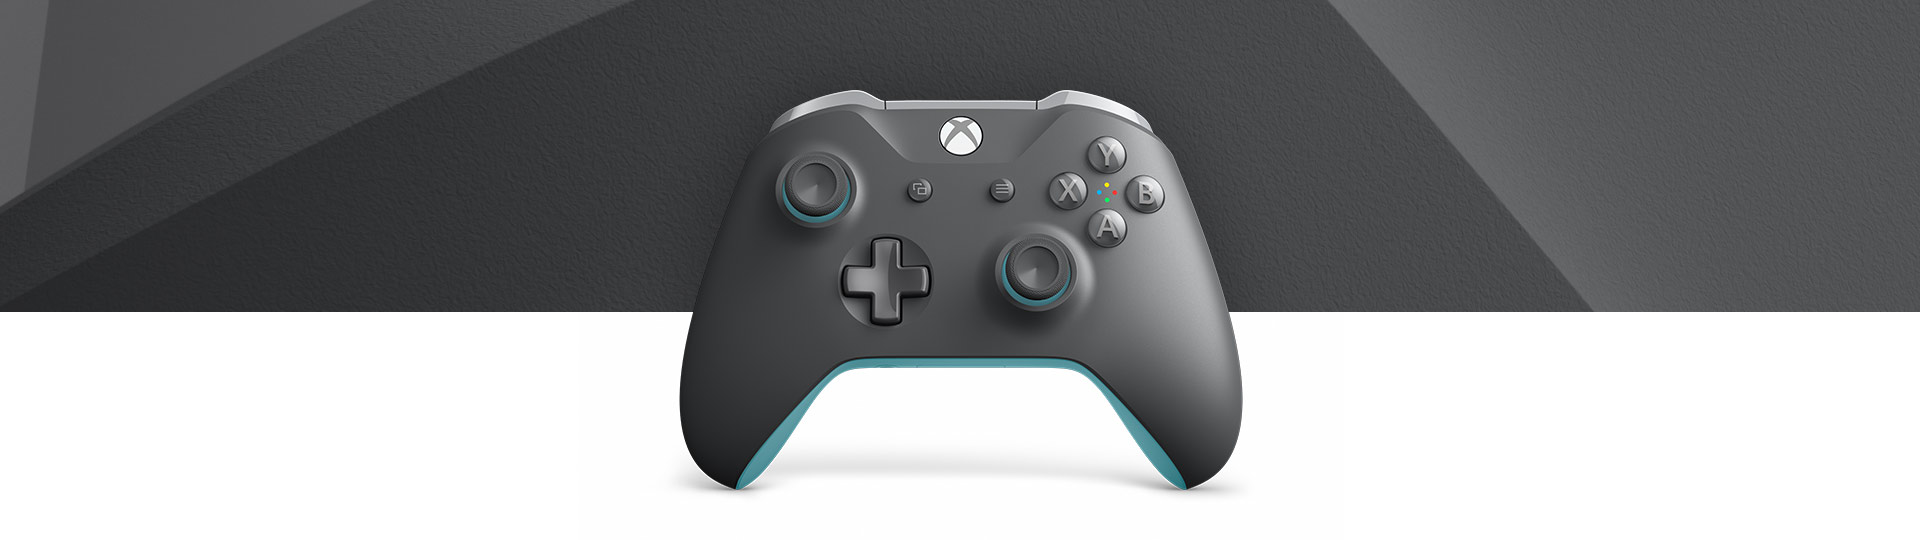 Vista frontal del Mando inalámbrico Xbox gris y azul